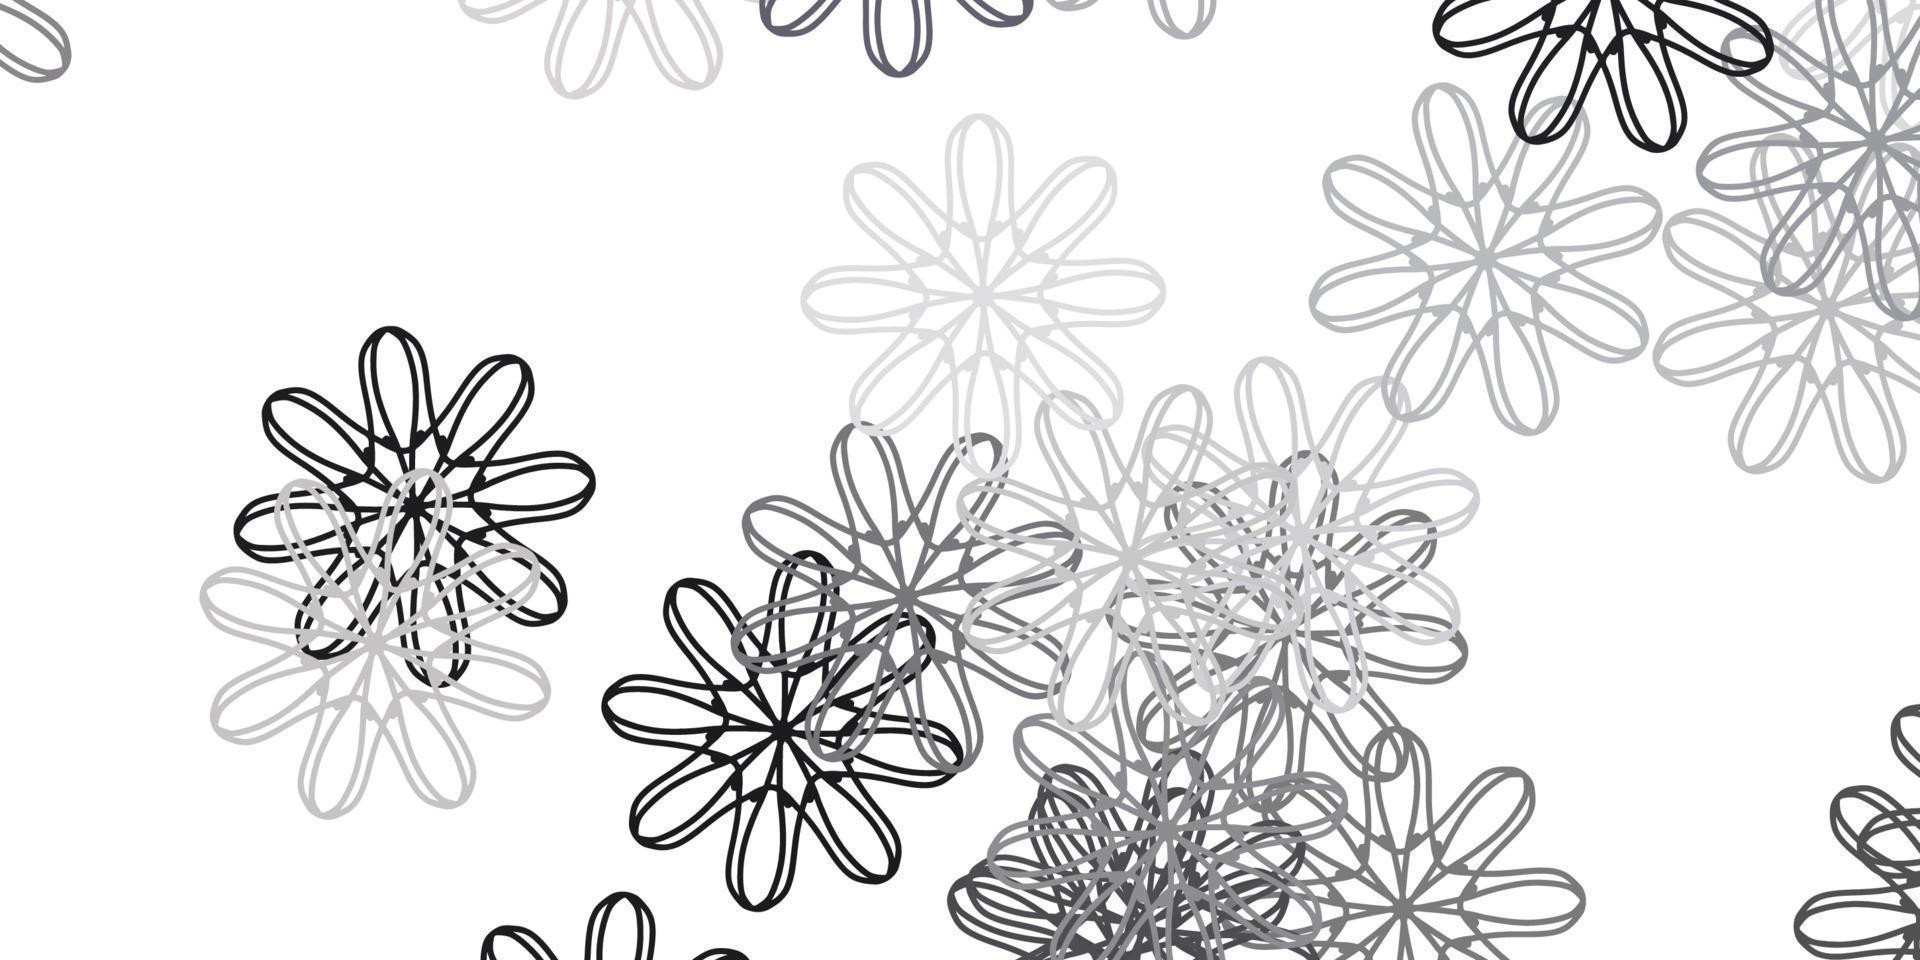 textura de doodle de vector gris claro con flores.